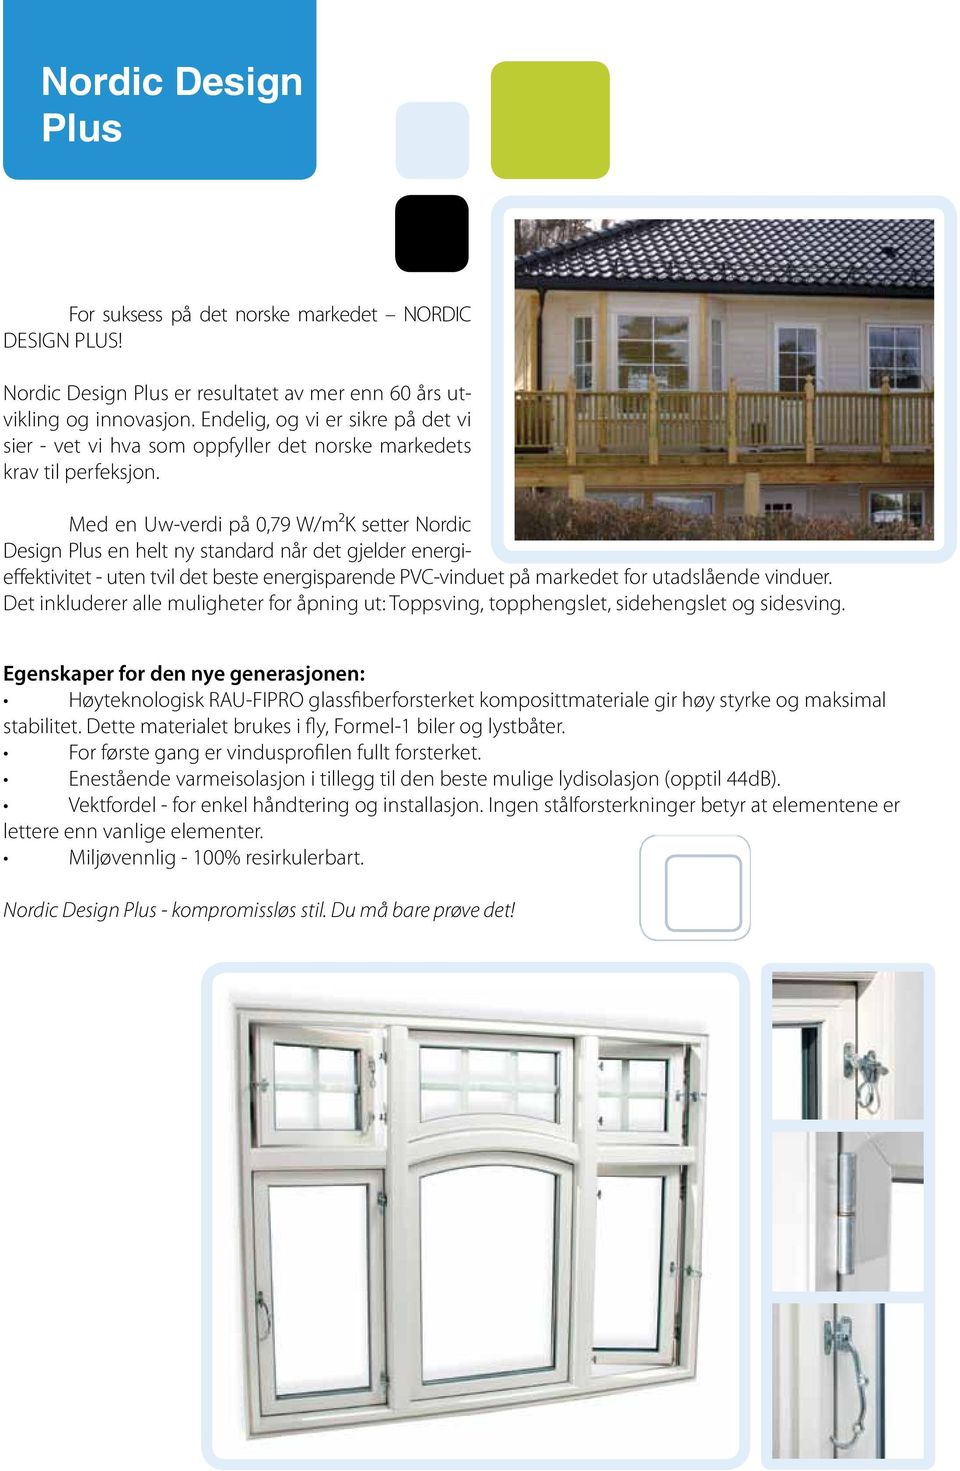 Med en Uw-verdi på 0,79 W/m²K setter Nordic Design Plus en helt ny standard når det gjelder energieffektivitet - uten tvil det beste energisparende PVC-vinduet på markedet for utadslående vinduer.